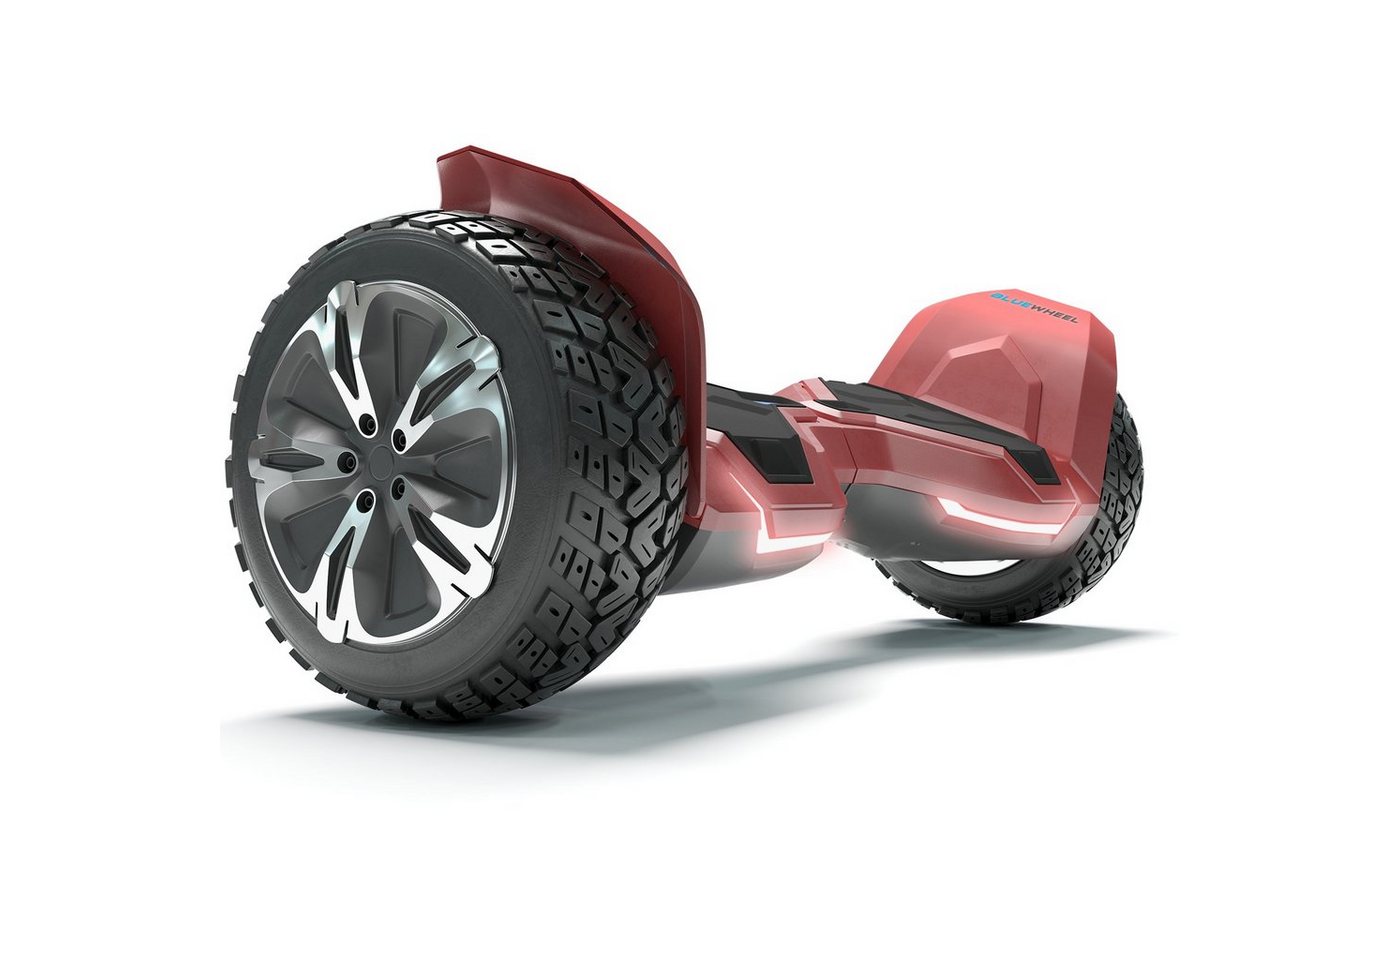 Bluewheel Electromobility Skateboard HX510 (Kinder Sicherheitsmodus & App - Bluetooth), 8.5 Premium Offroad Hoverboard Bluewheel HX510 SUV" von Bluewheel Electromobility